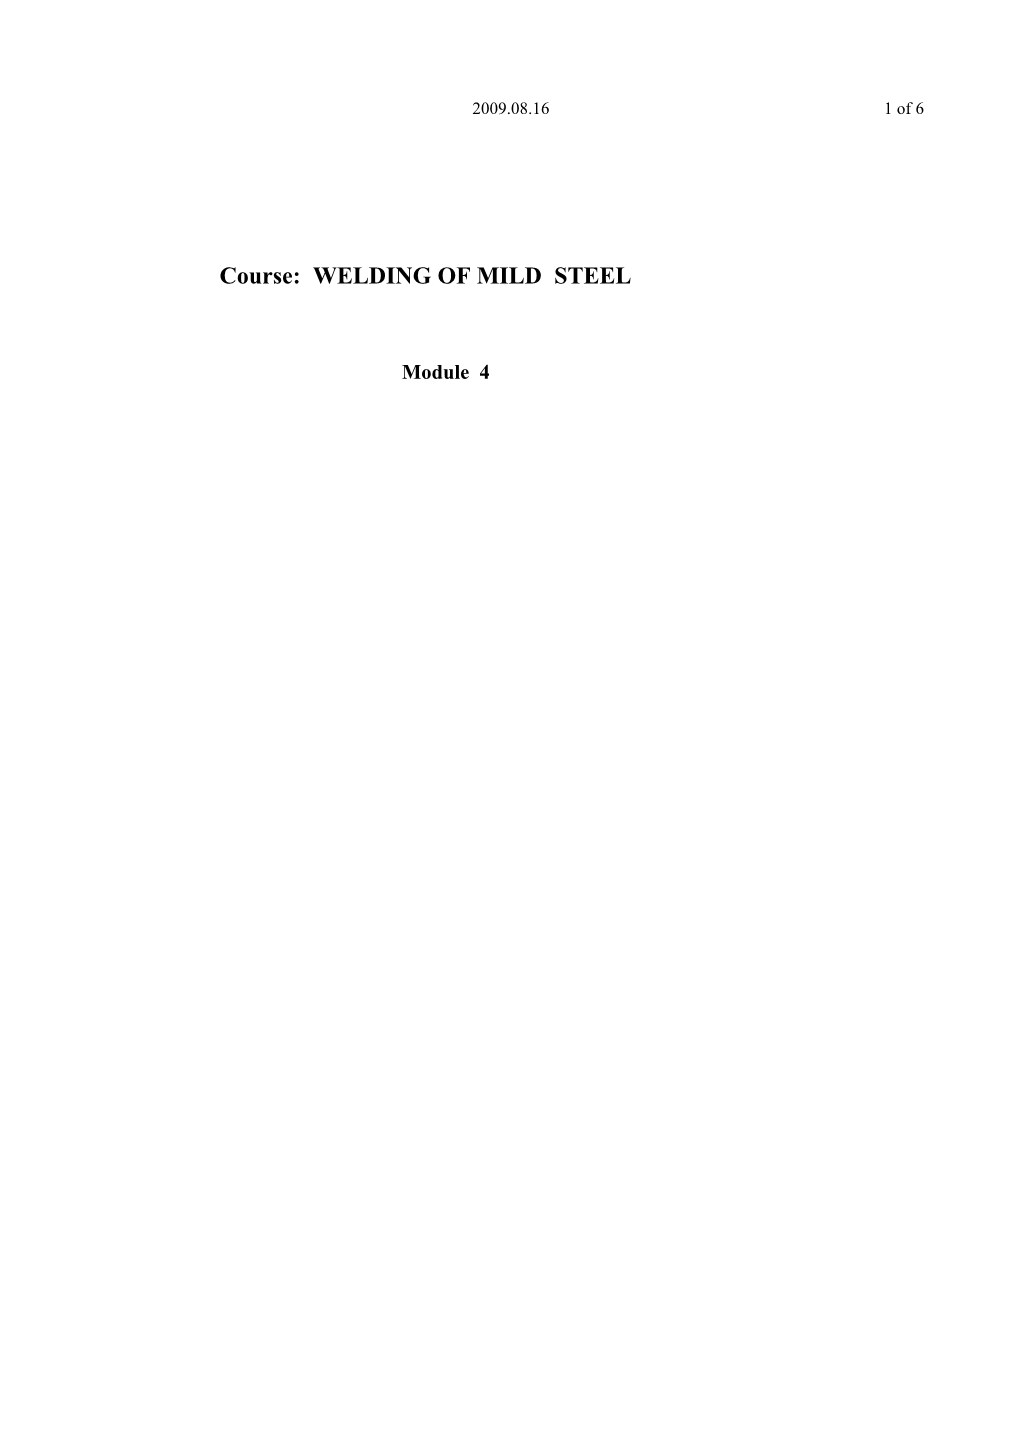 Course: WELDING of MILD STEEL